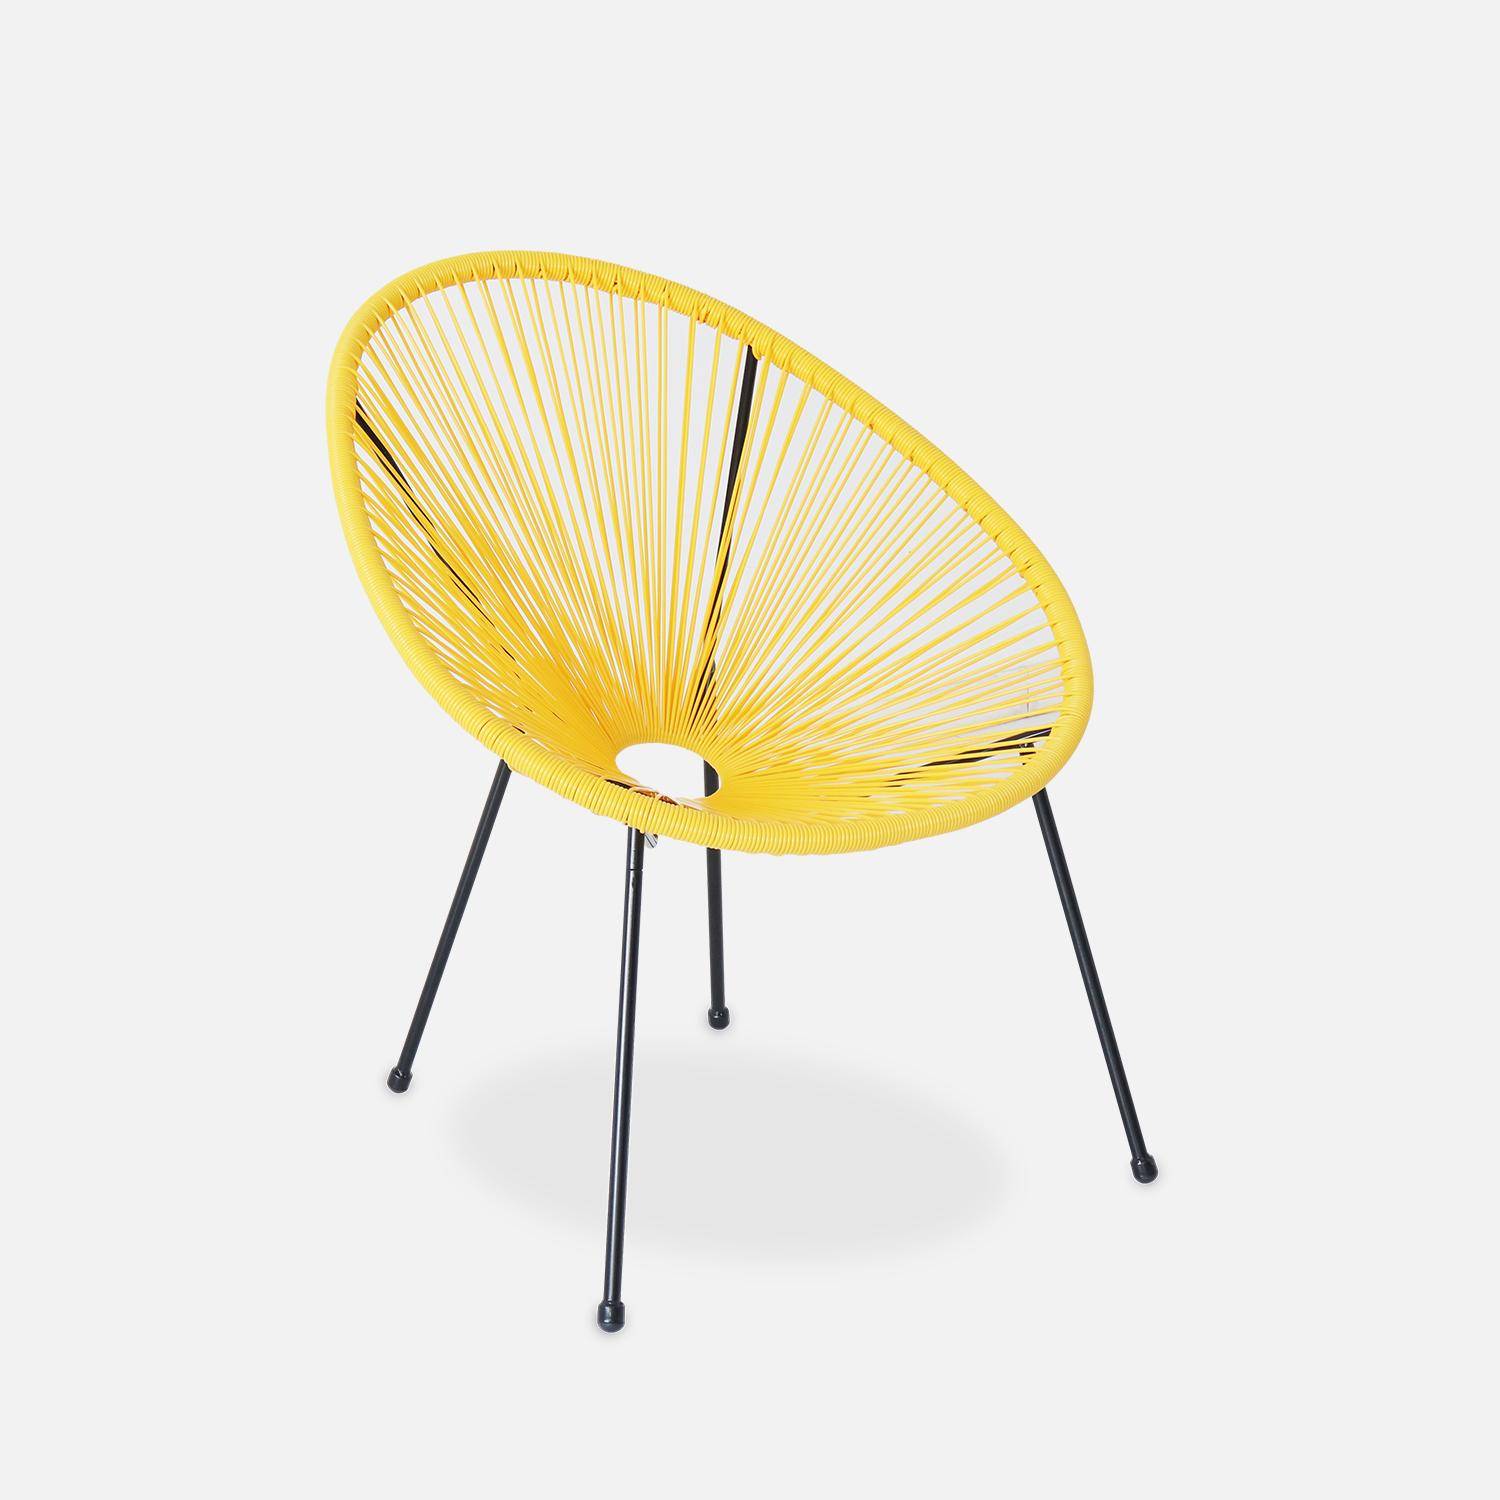 ACAPULCO stoel ei-vormig -Geel- Stoel 4 poten retro design, plastic koorden, binnen/buiten Photo2